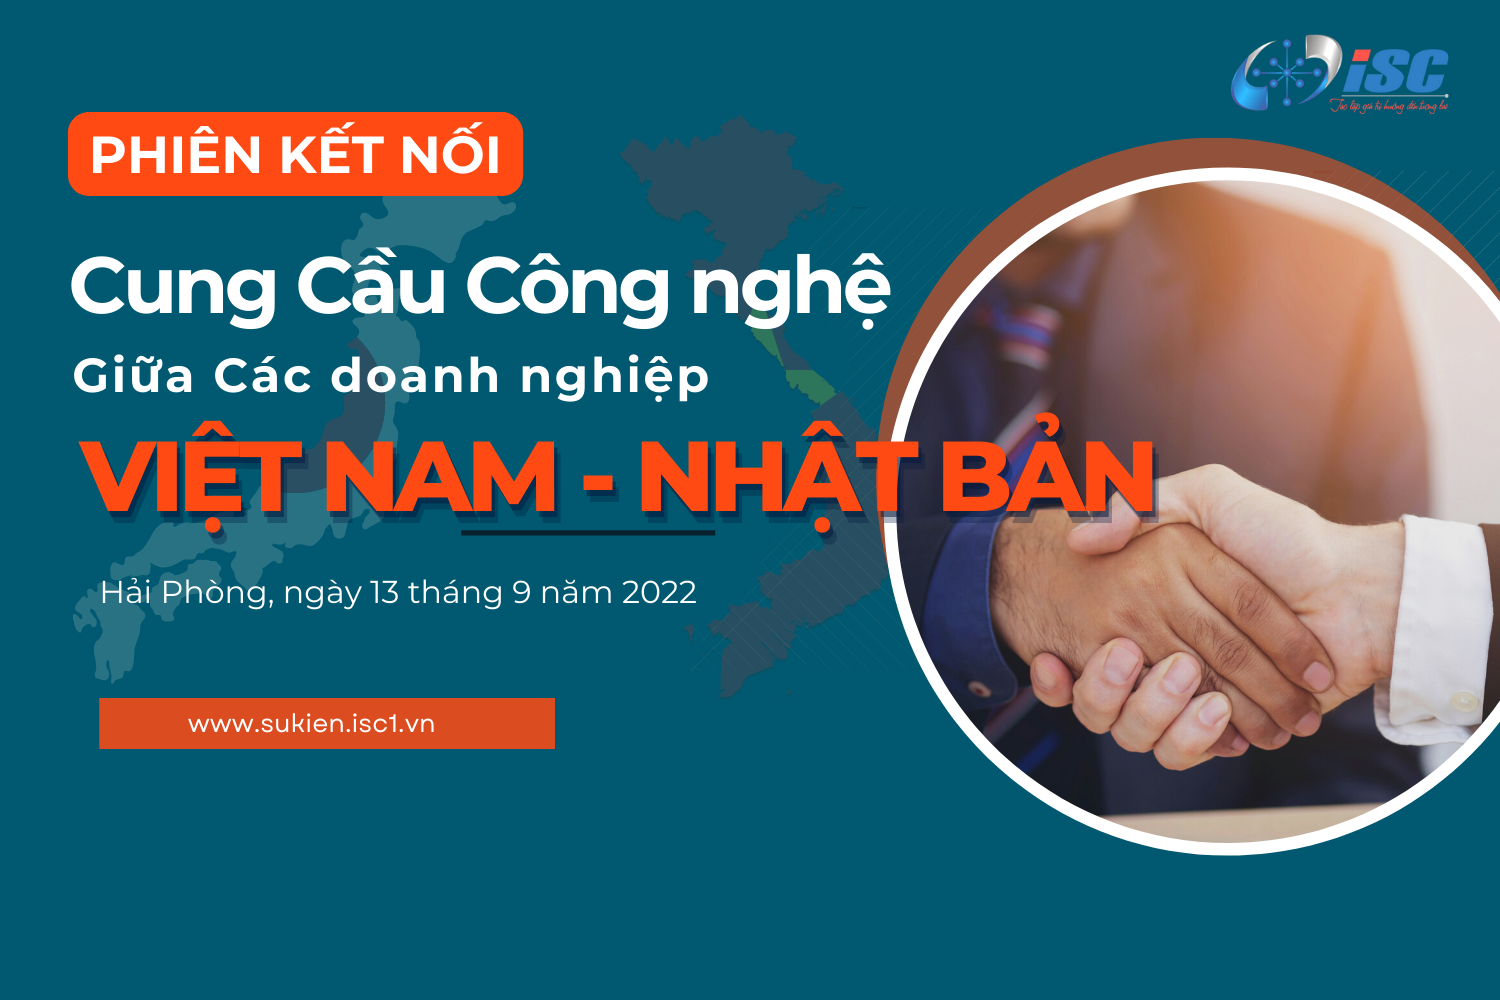 Phiên kết nối Cung cầu Công nghệ trực tuyến giữa các doanh nghiệp Việt Nam - Nhật Bản